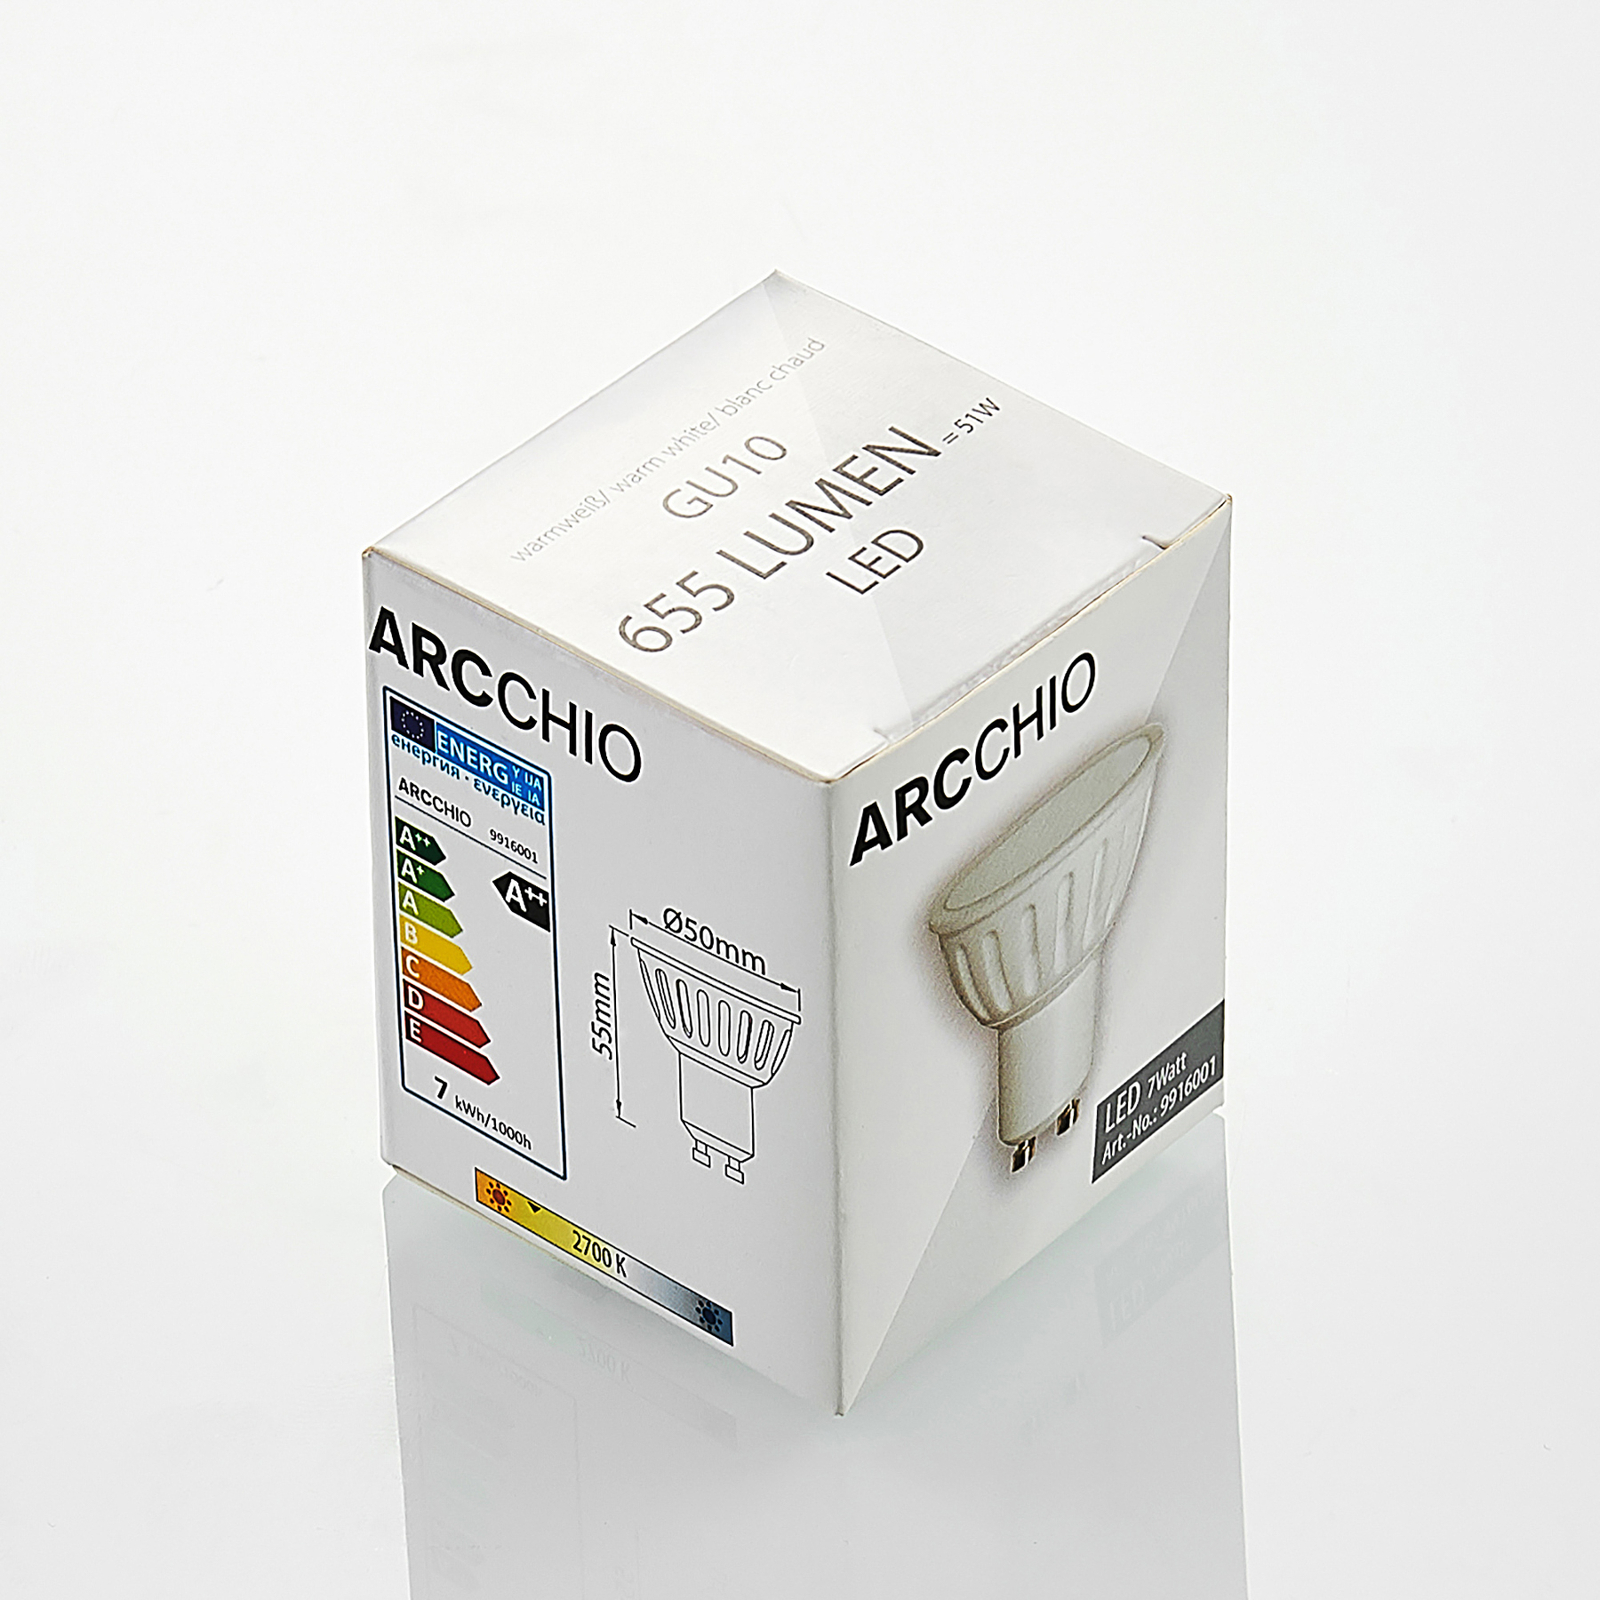 Arcchio reflector LED GU10 100° 5W 3.000K set 3x